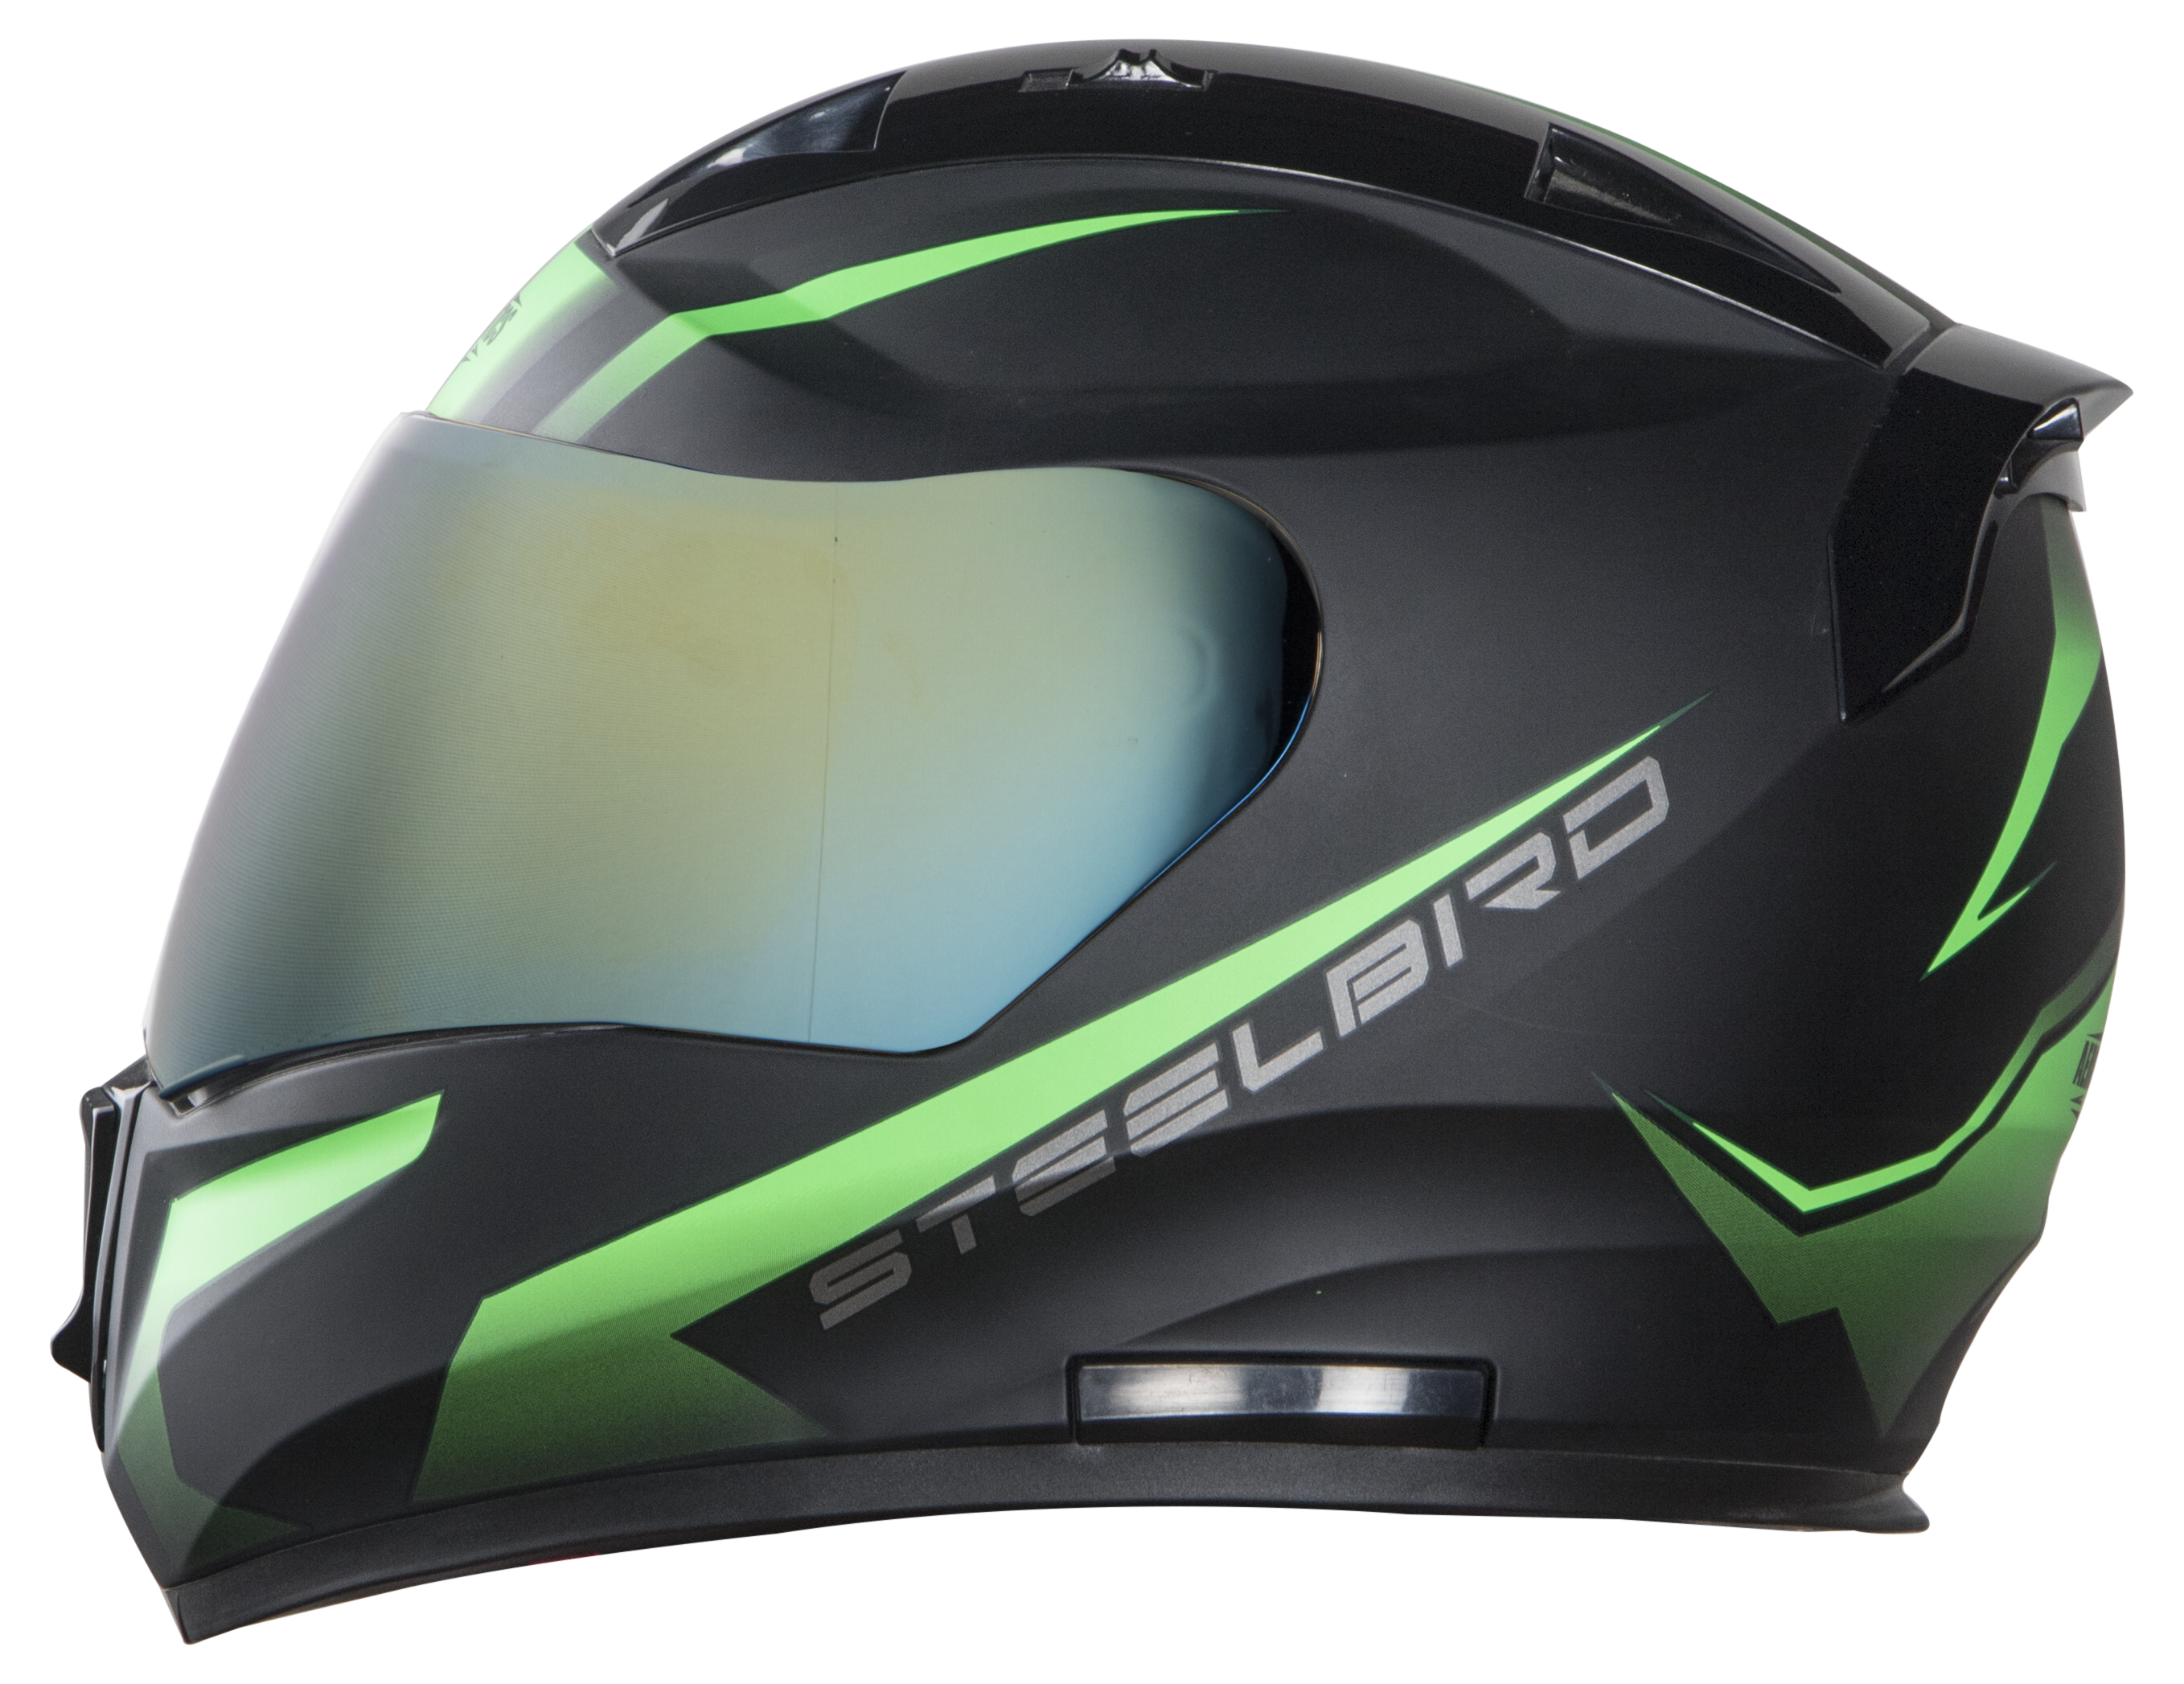 Steelbird SA-1 Whif ISI Certified Full Face Helmet (Matt Black Green With Chrome Gold Visor)